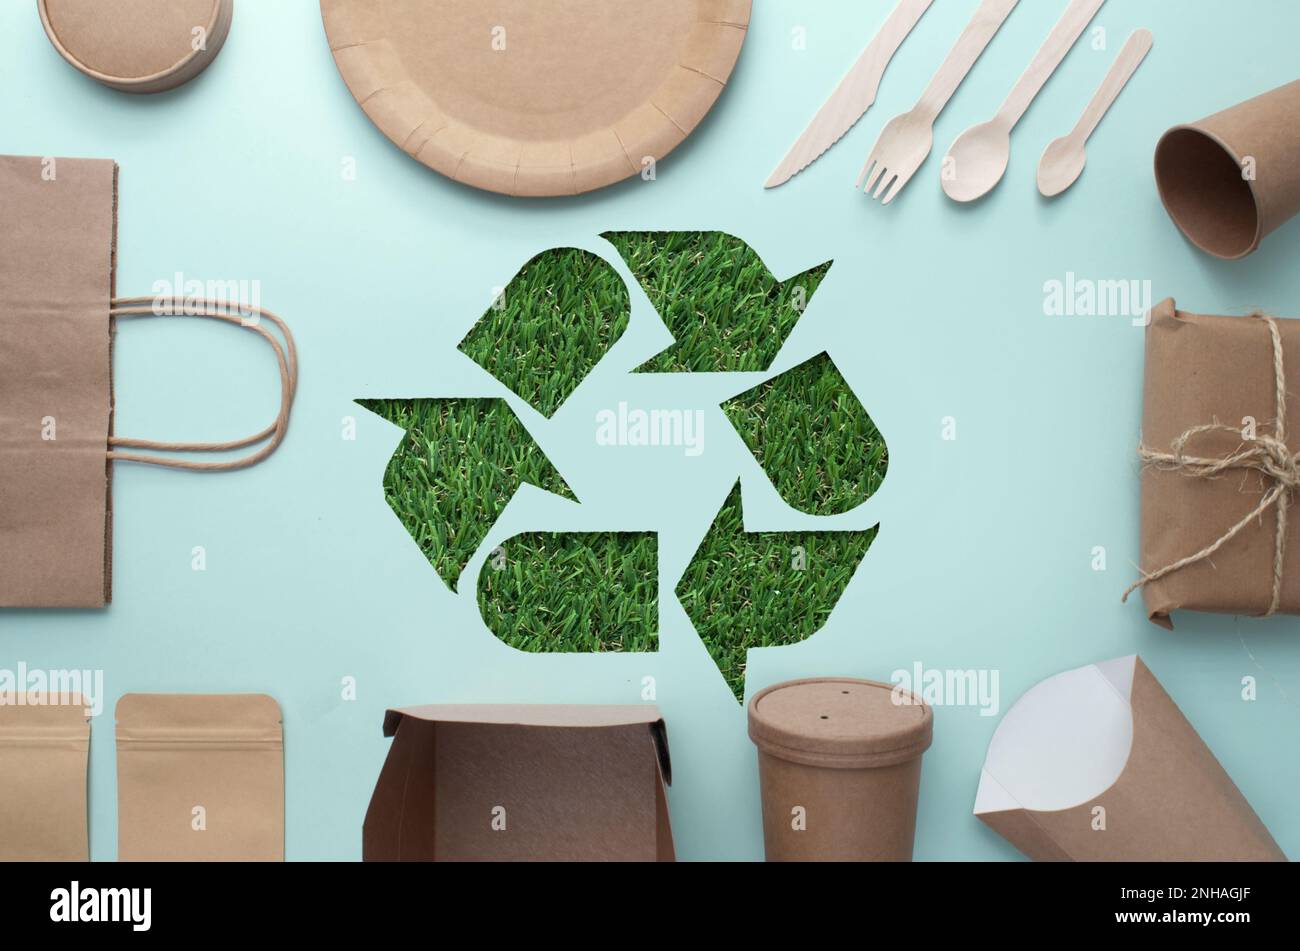 Collection d'emballages écologiques à faible teneur en carbone avec découpe du symbole de recyclage de l'herbe au centre Banque D'Images